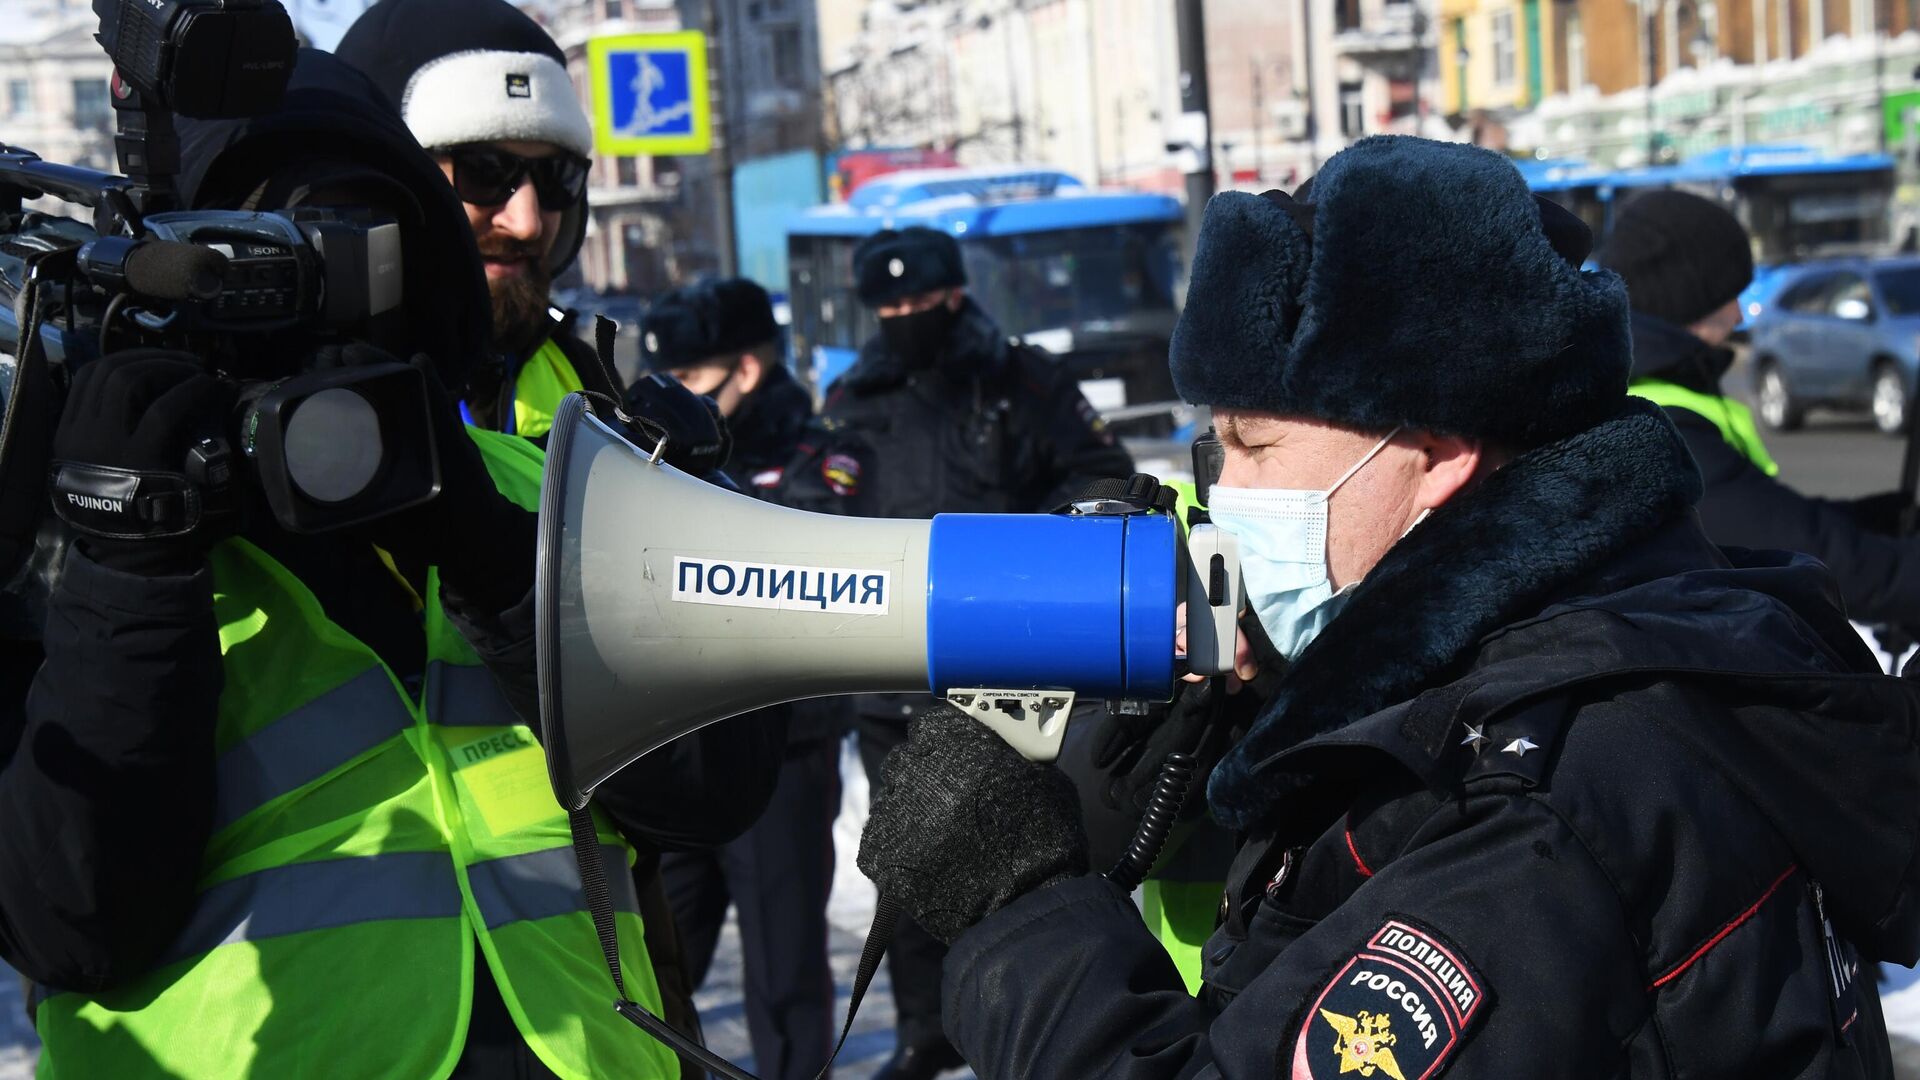 Сотрудник правоохранительных органов и журналисты во время несанкционированной акции протеста во Владивостоке - РИА Новости, 1920, 25.02.2021